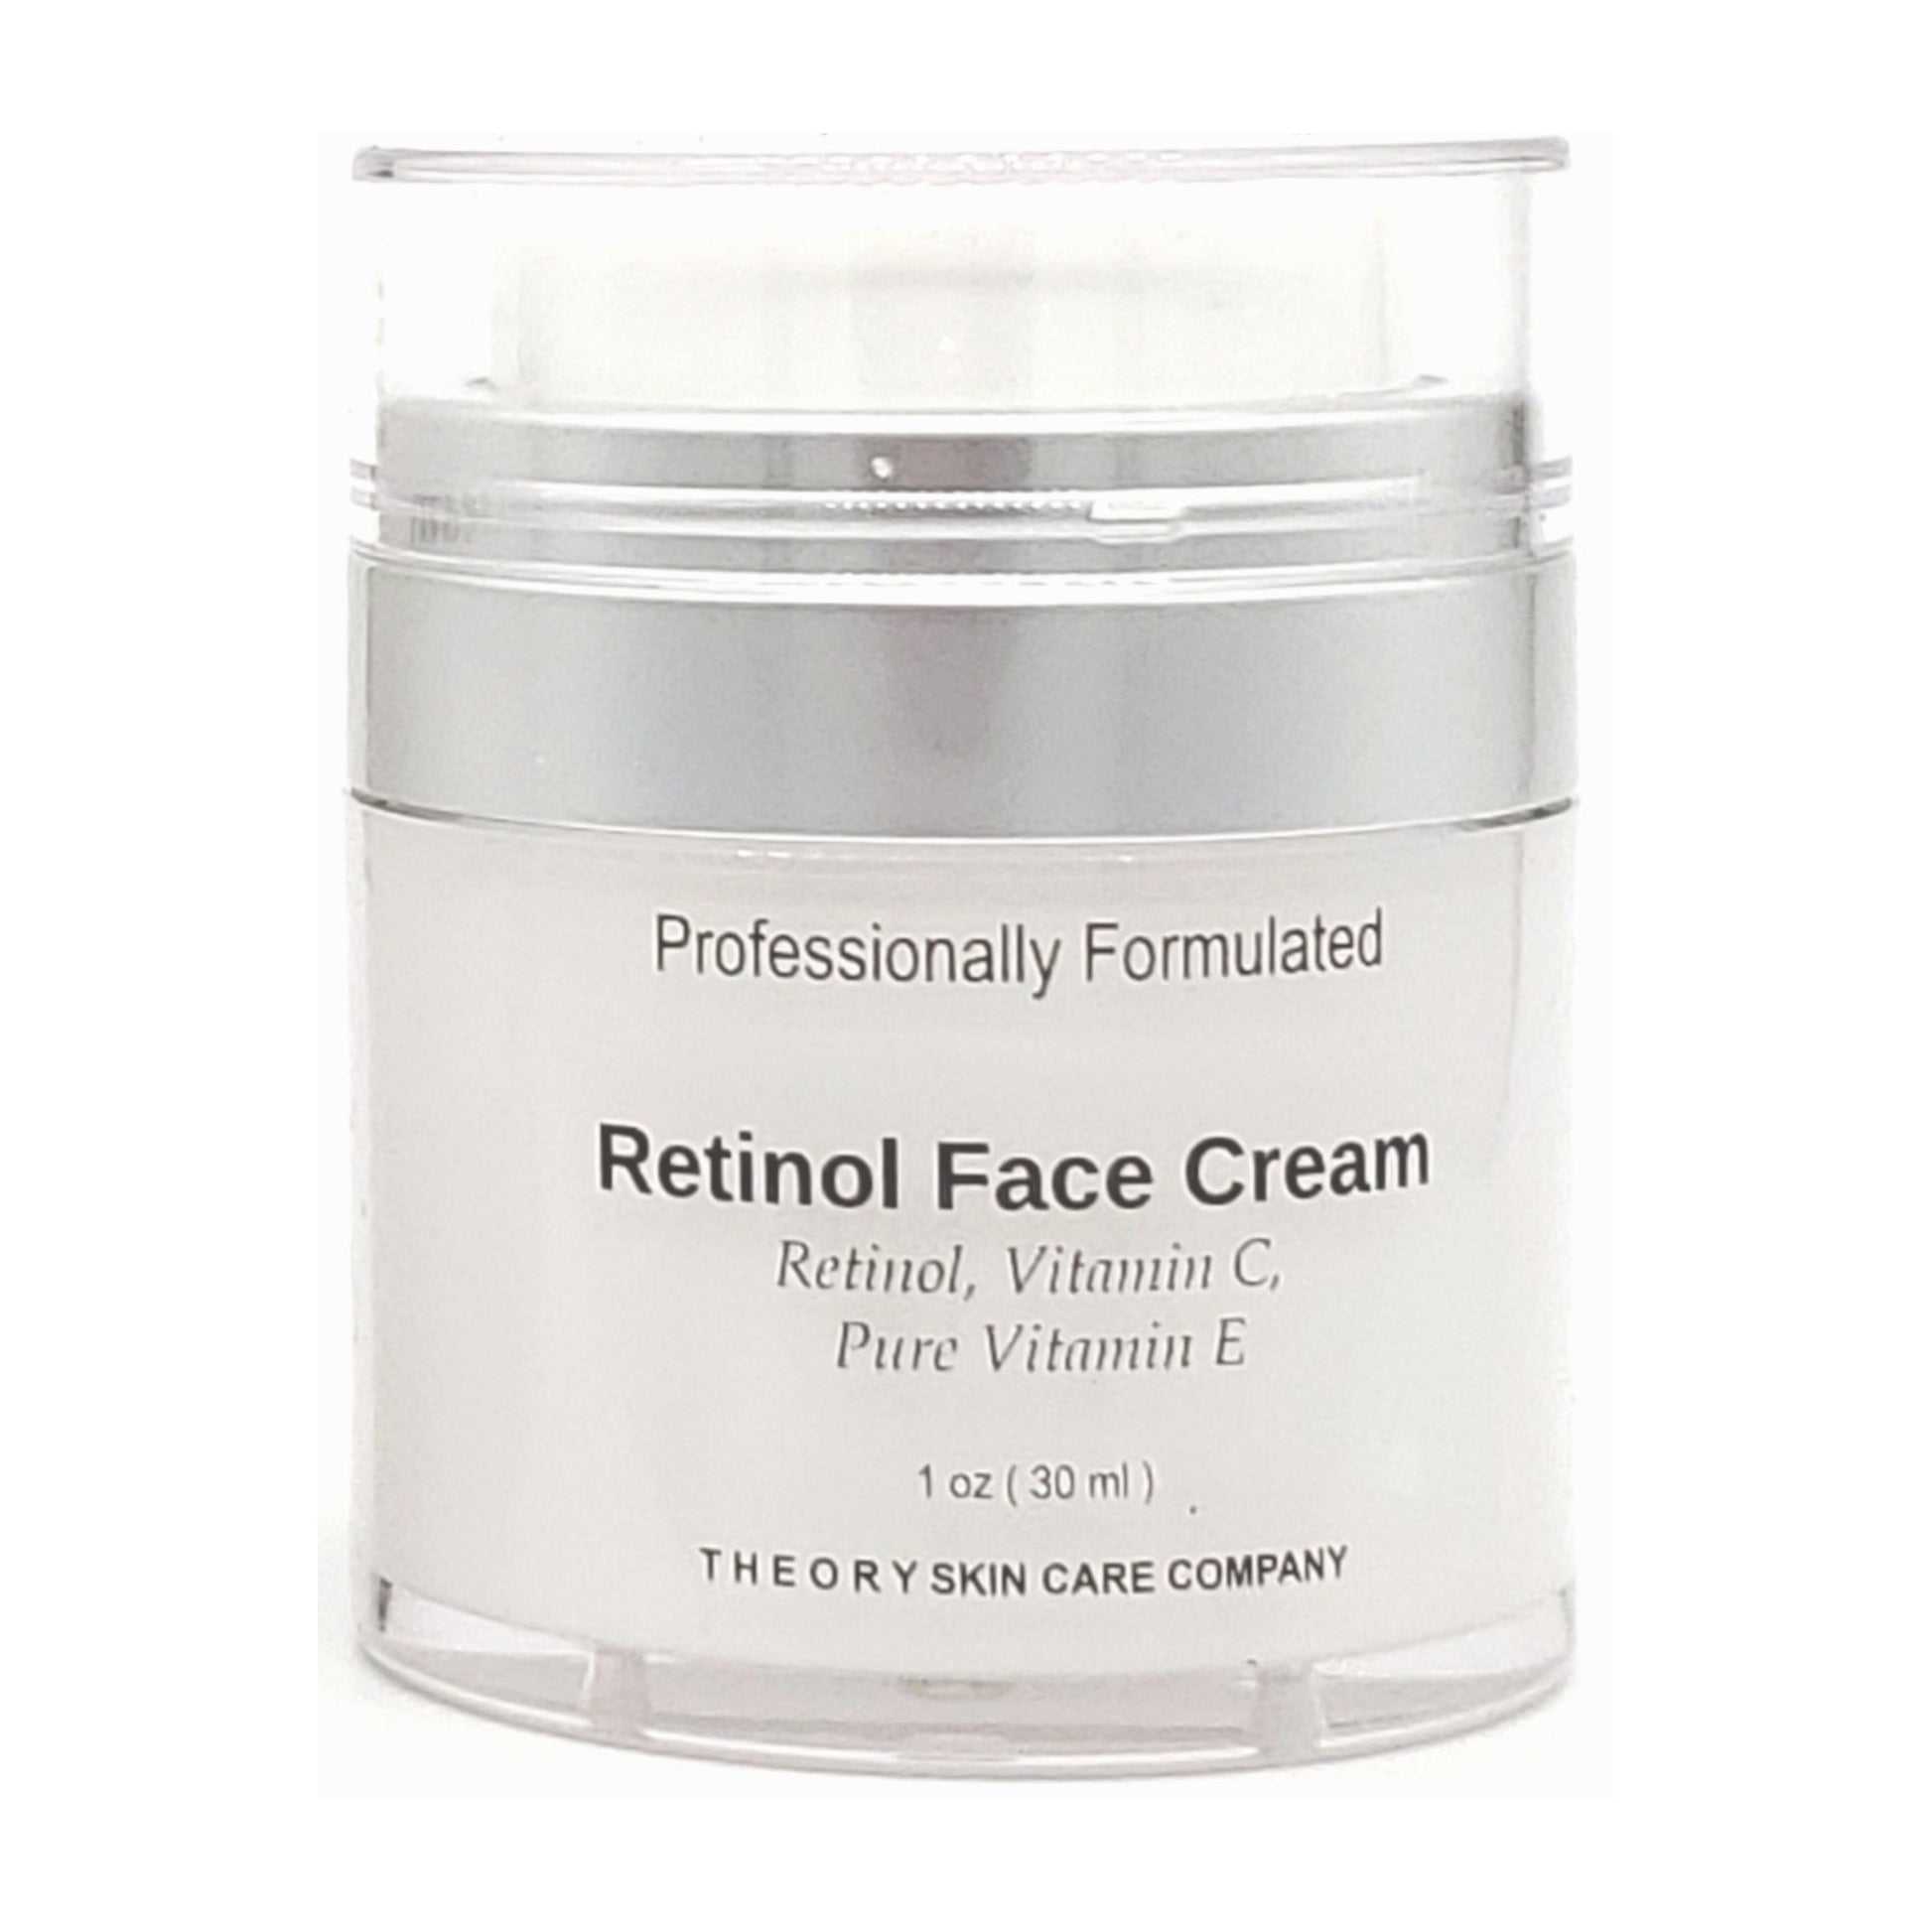 Retinol Face Cream, Rejuvenate and Restore Your Skin